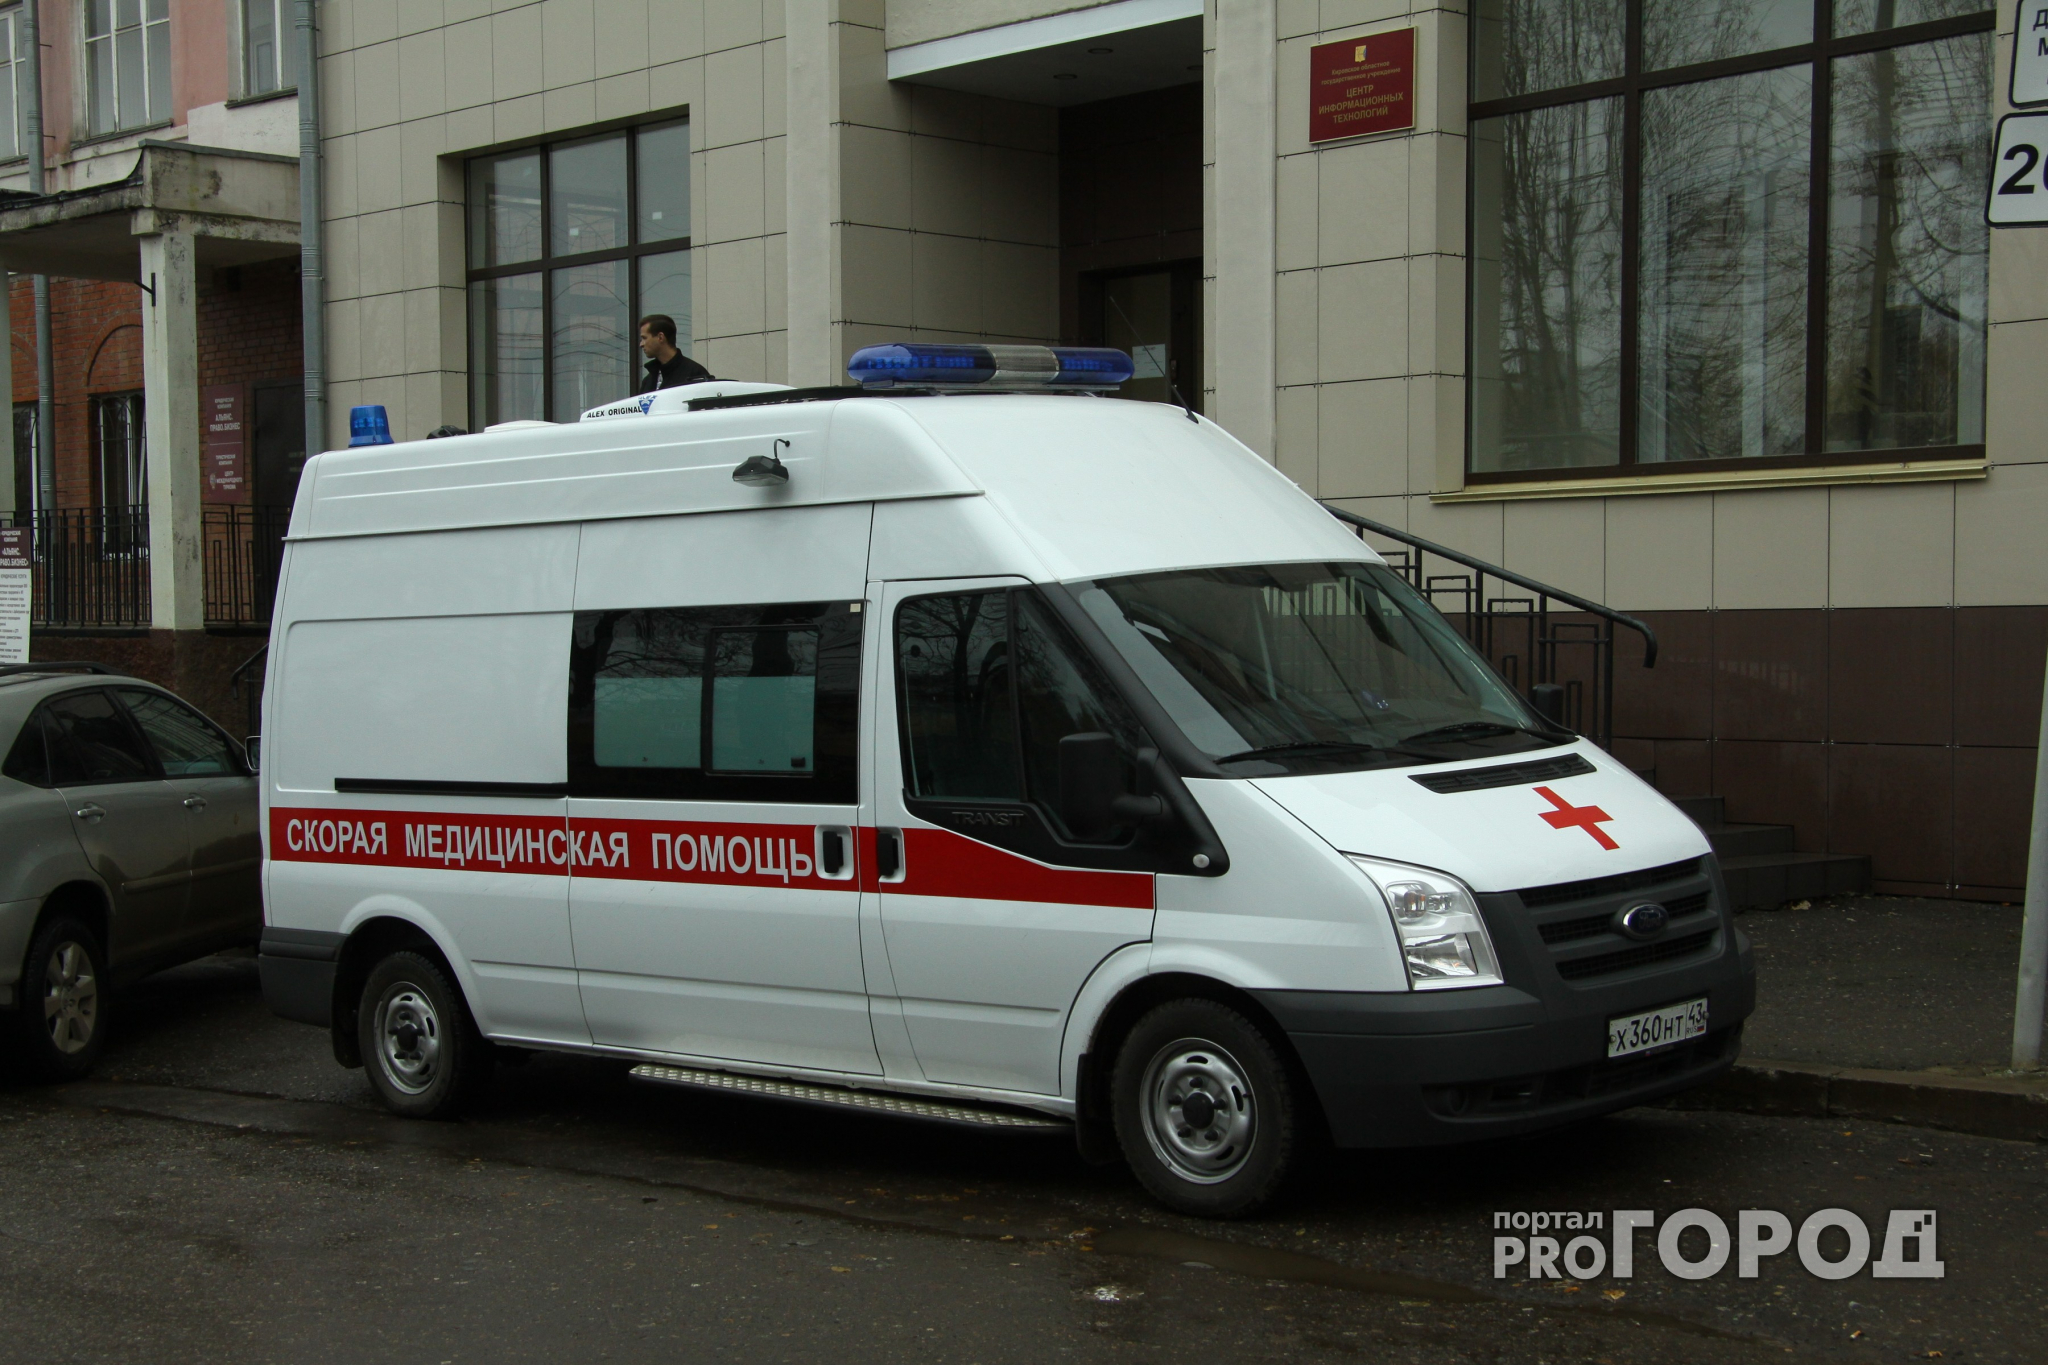 Новости России: пьяный астматик избил врача скорой помощи